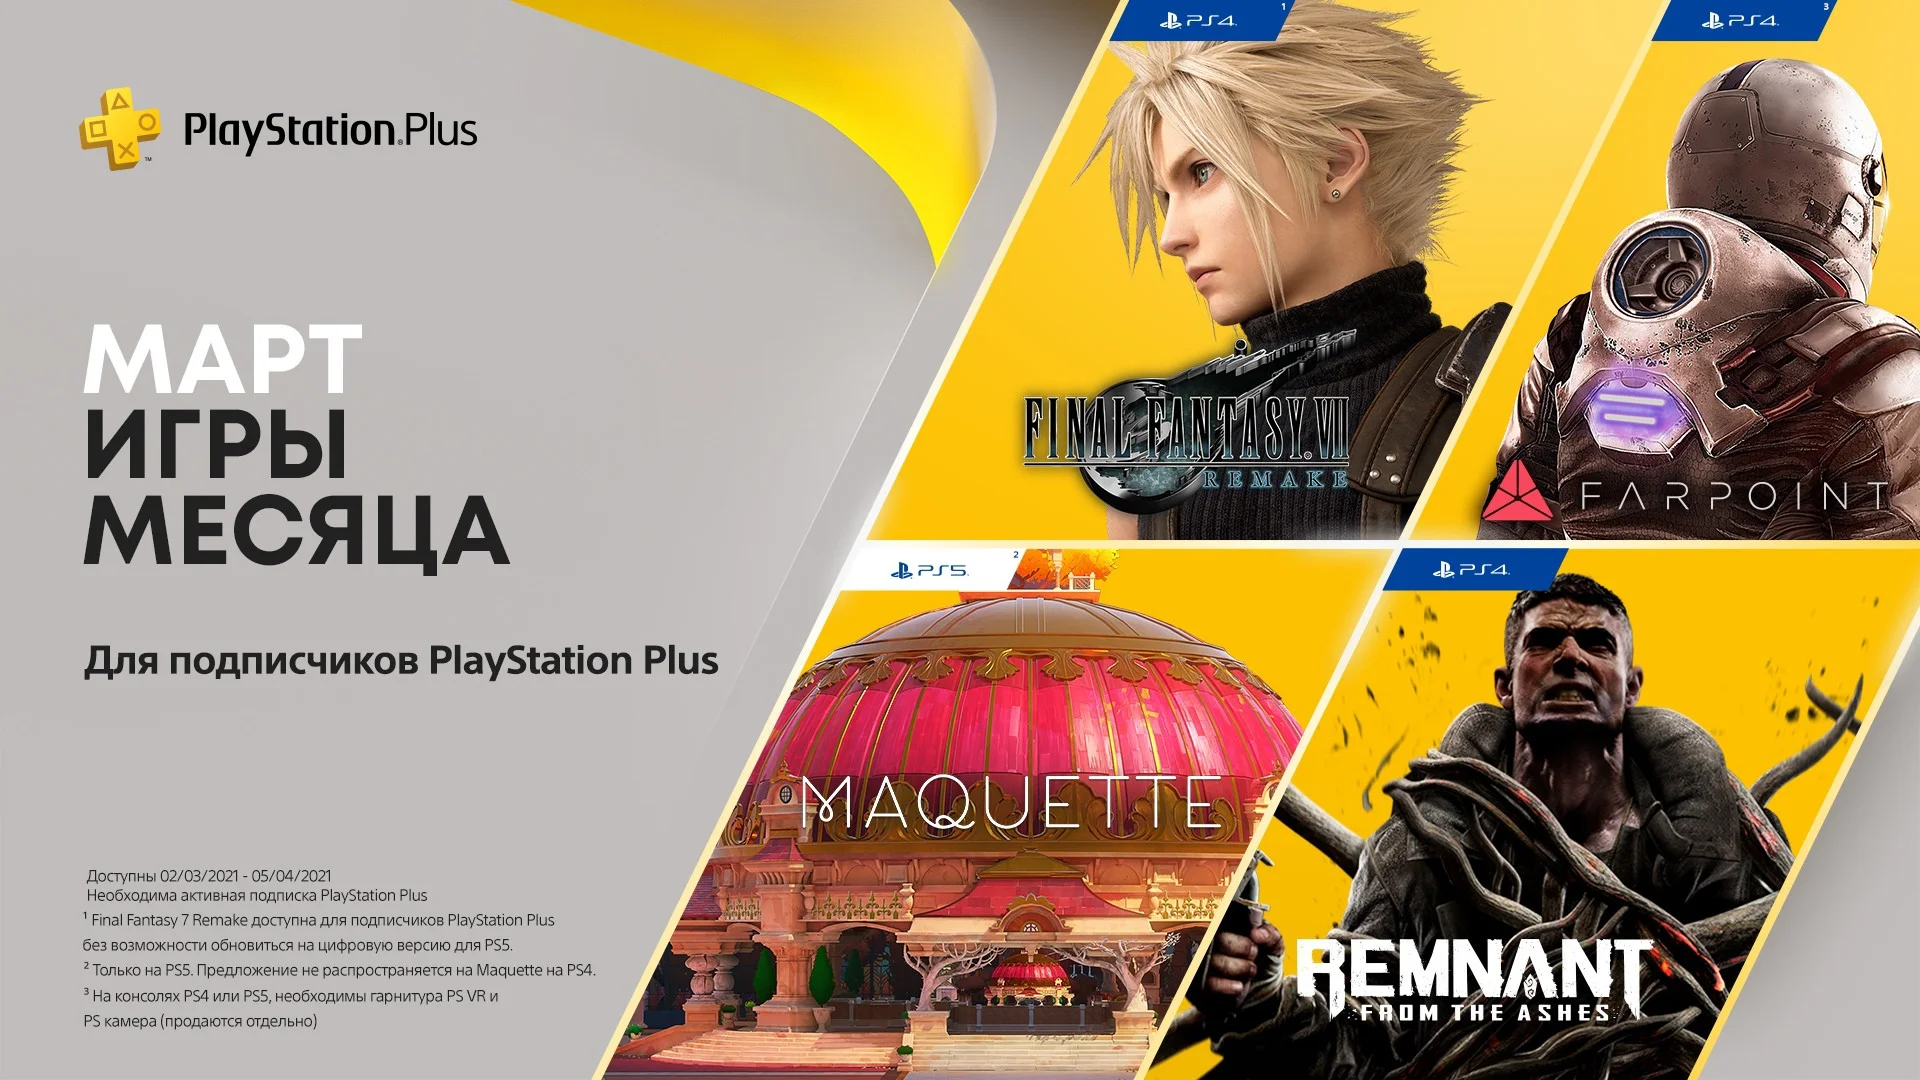 В марте подписчики PS Plus получат 4 игры, включая ремейк Final Fantasy VII для PS4 - фото 1